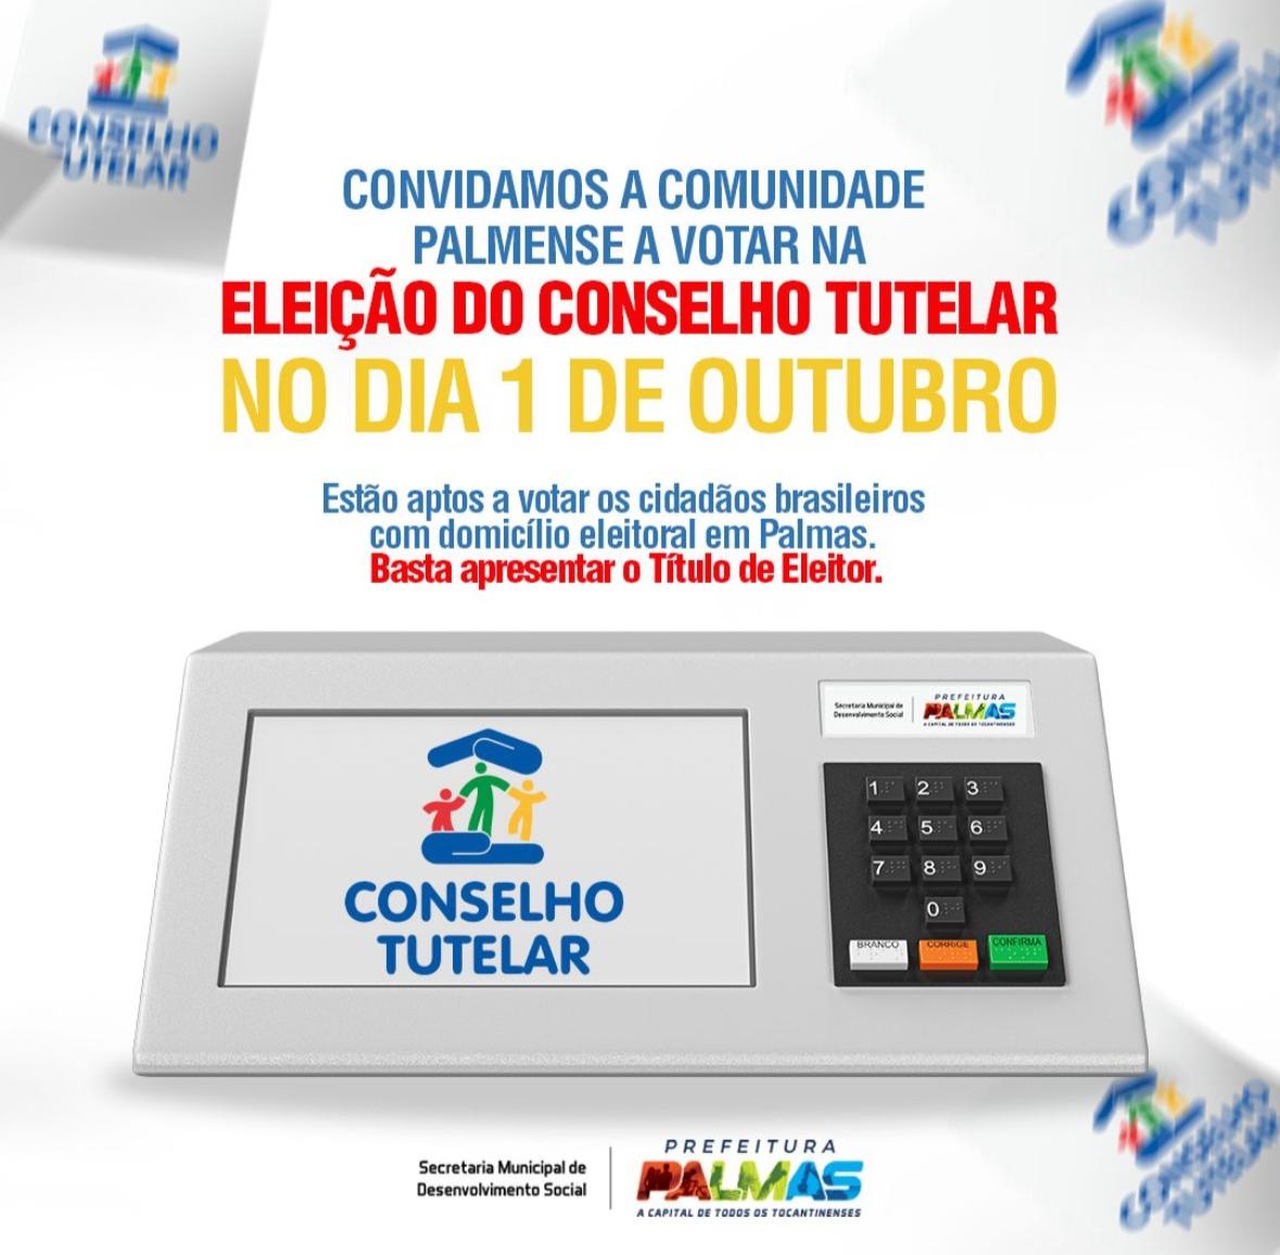 Eleição do Conselho Tutelar: confira os locais de votações em Palmas